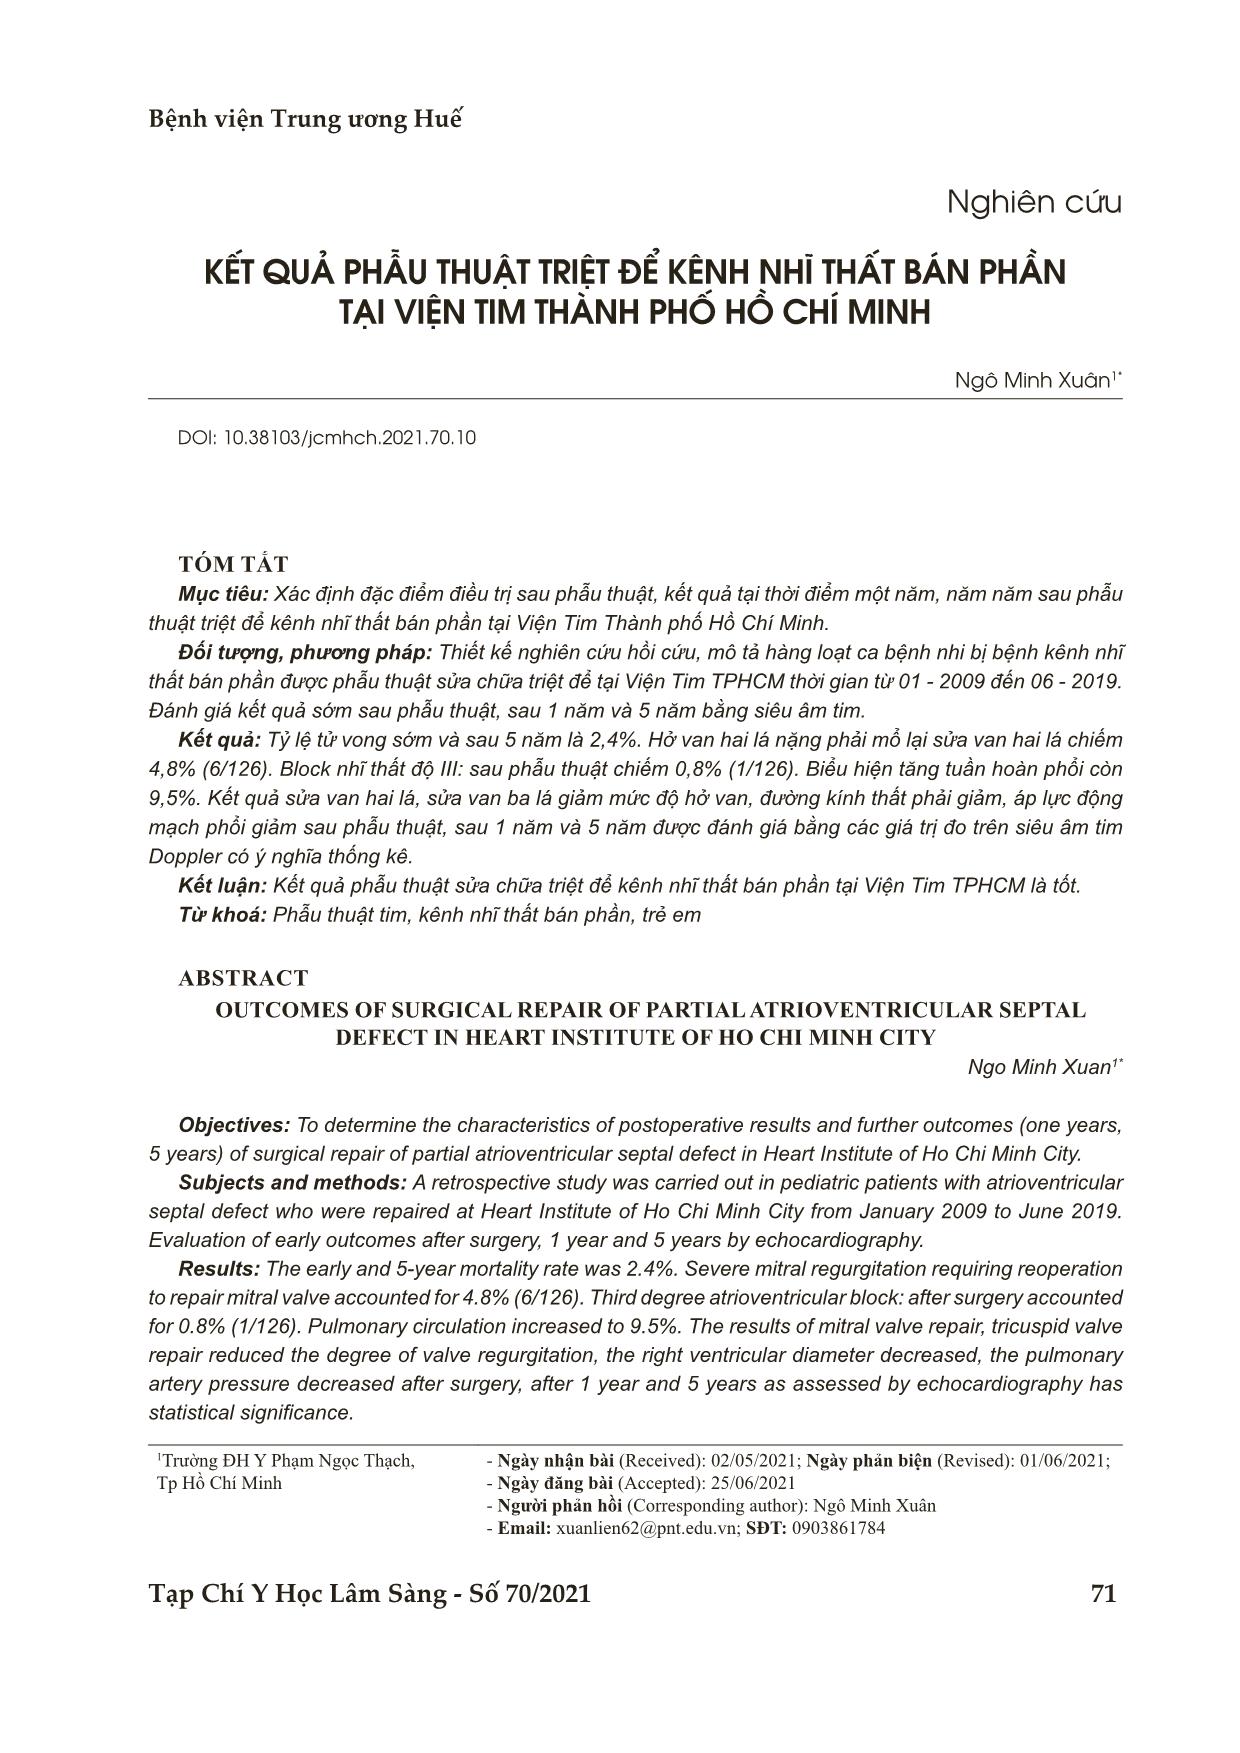 Kết quả phẫu thuật triệt để kênh nhĩ thất bán phần tại viện tim thành phố Hồ Chí Minh trang 1